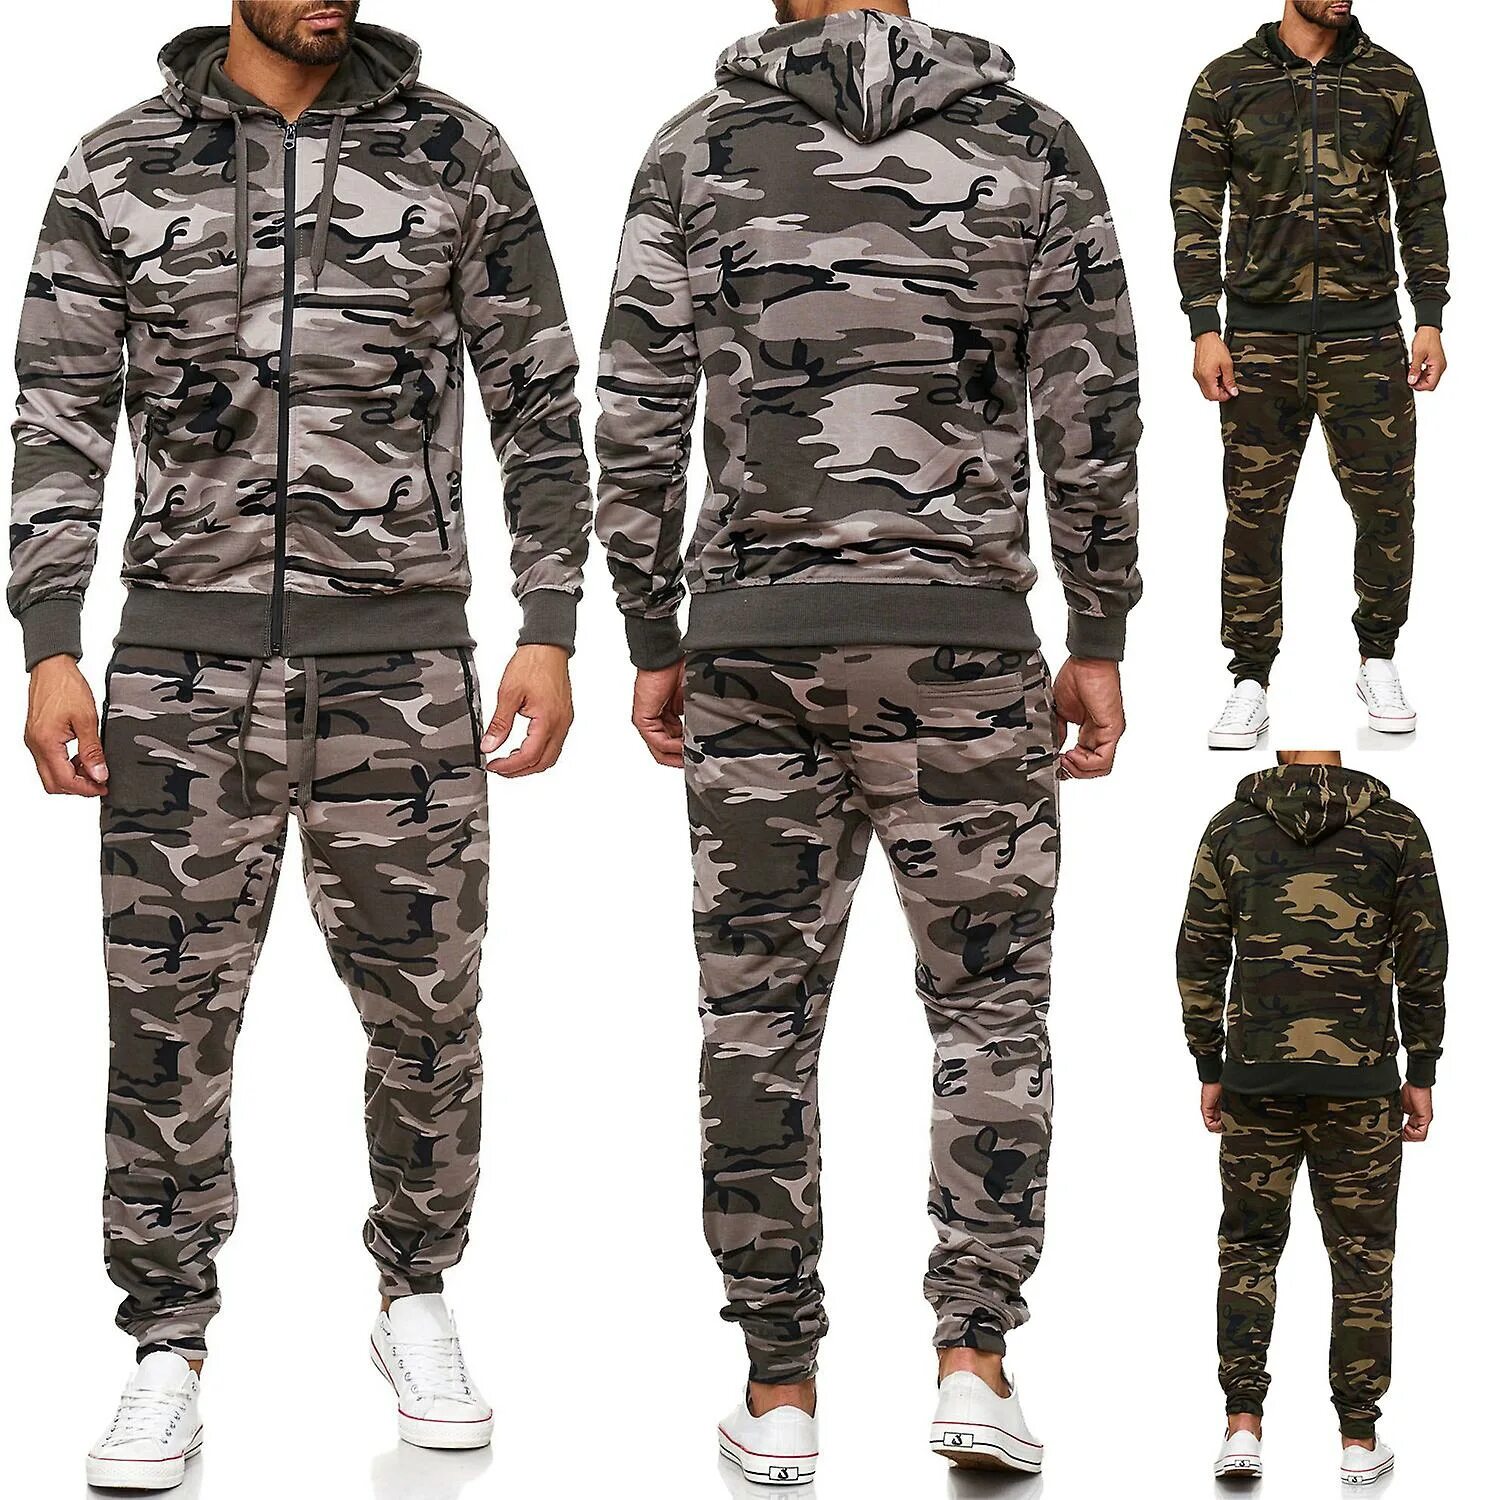 Армейский камуфляжный костюм. Костюм цвет Camouflage. Адидас милитари спортивный костюм. Ventus 7 спортивный костюм мужской камуфляж. Nike Camouflage костюм.